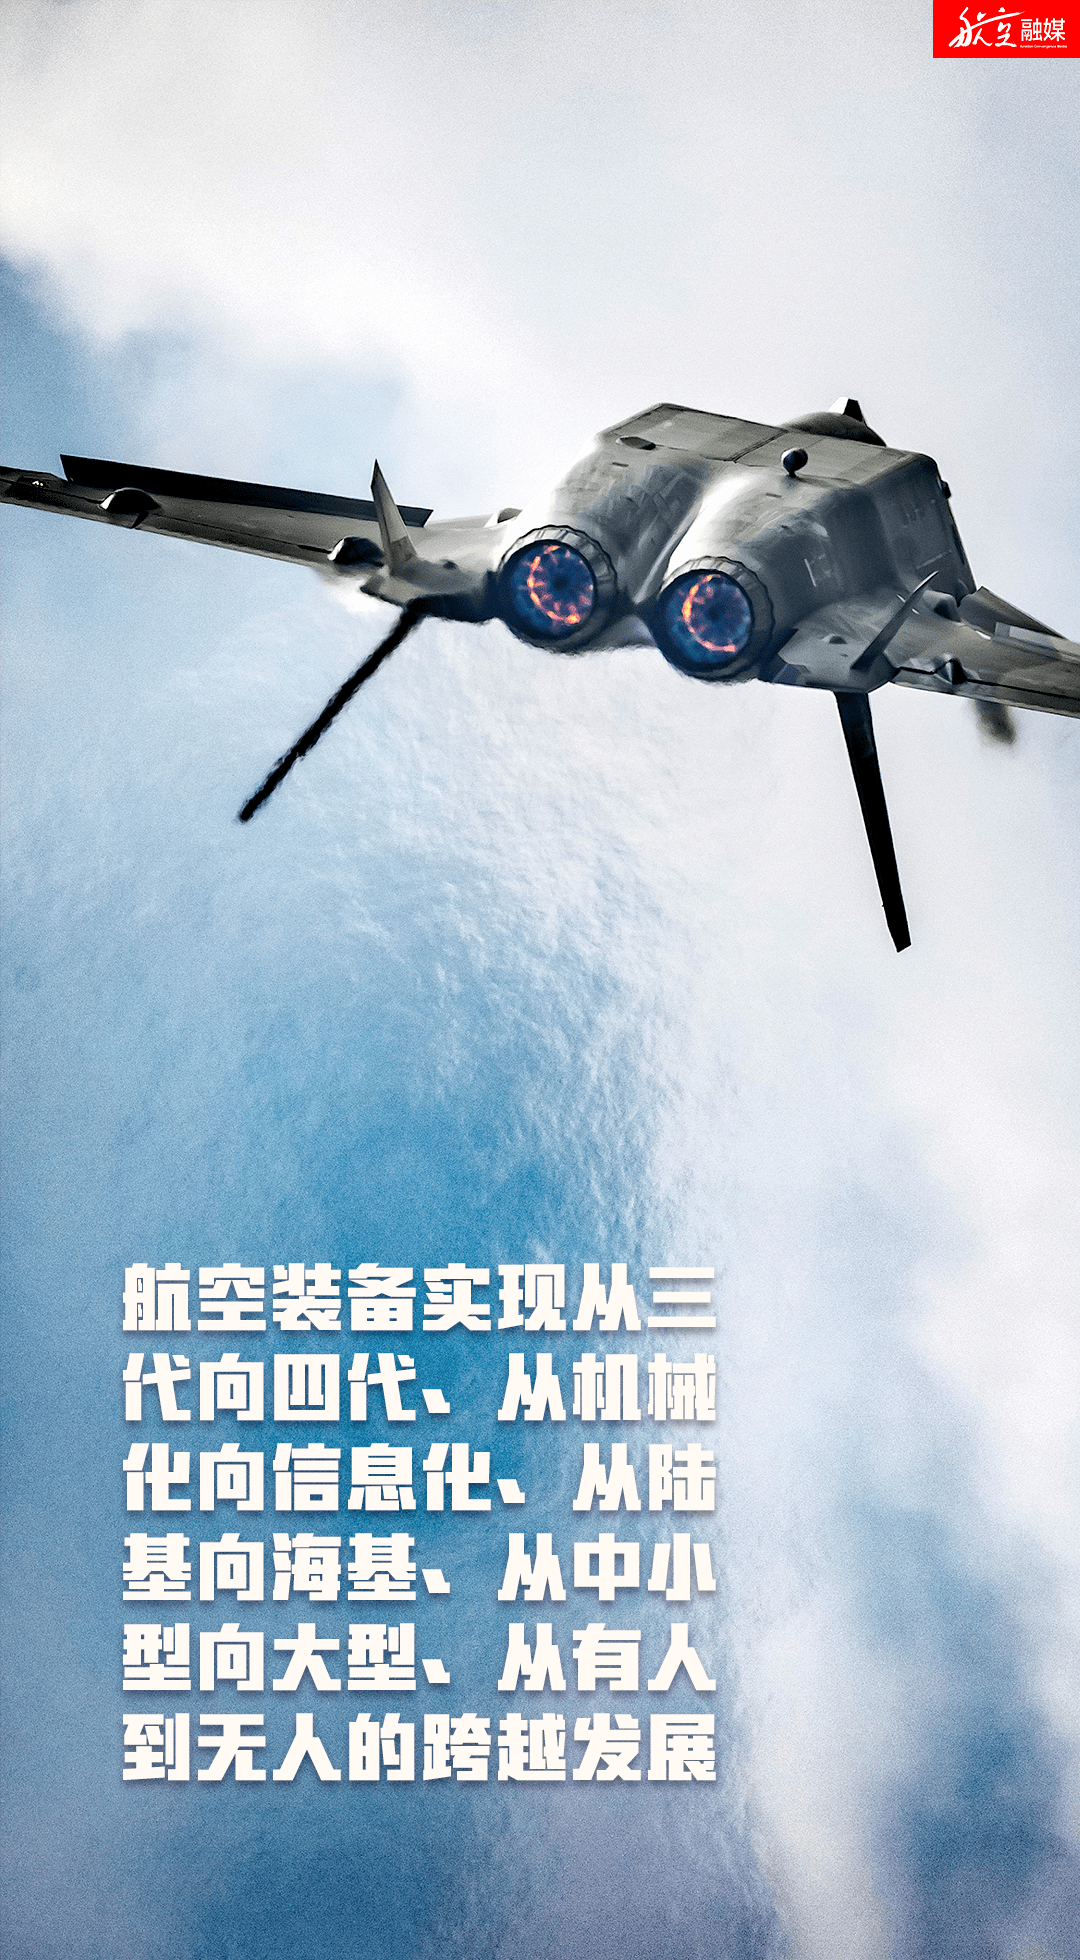 航空强国中国心图片